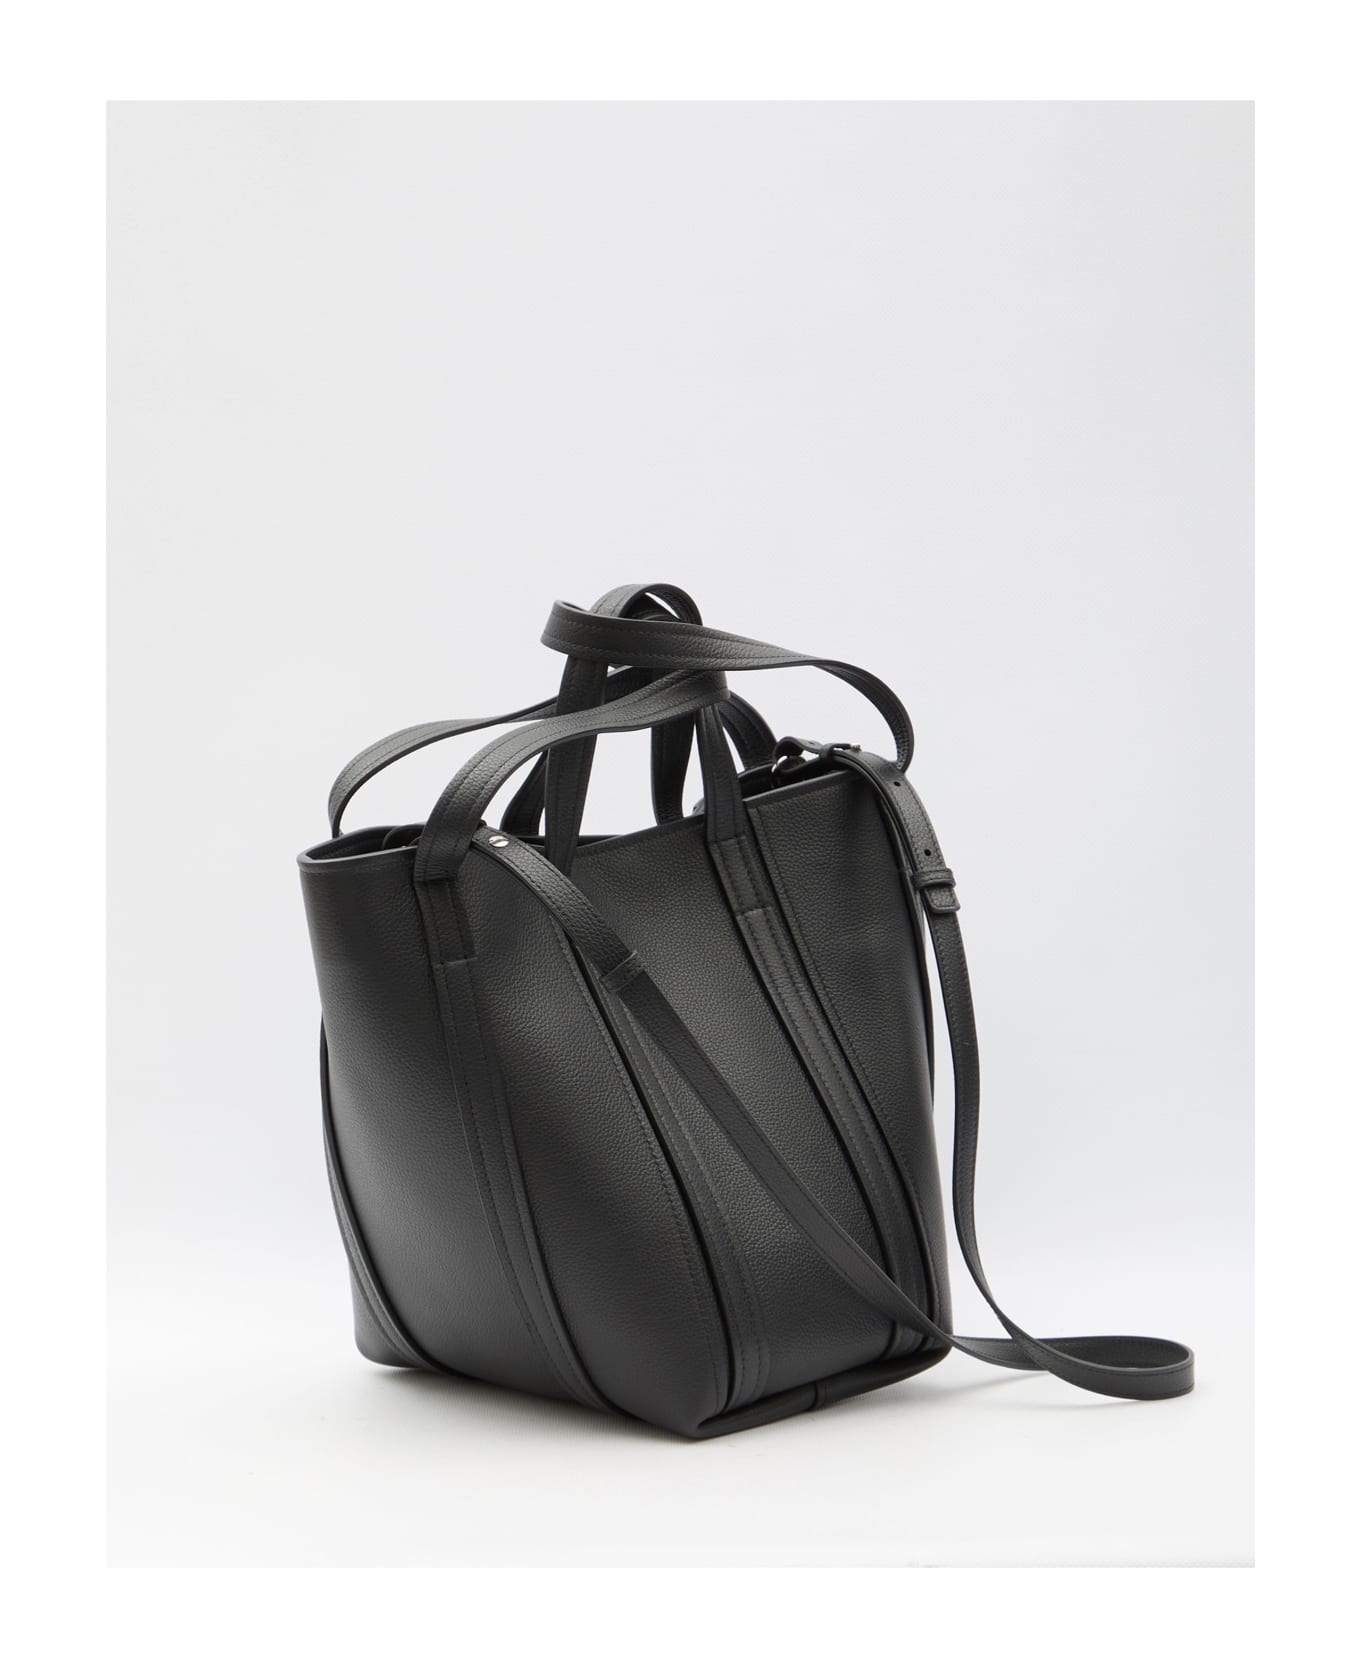 Balenciaga Everyday Small Bag - BLACK トートバッグ